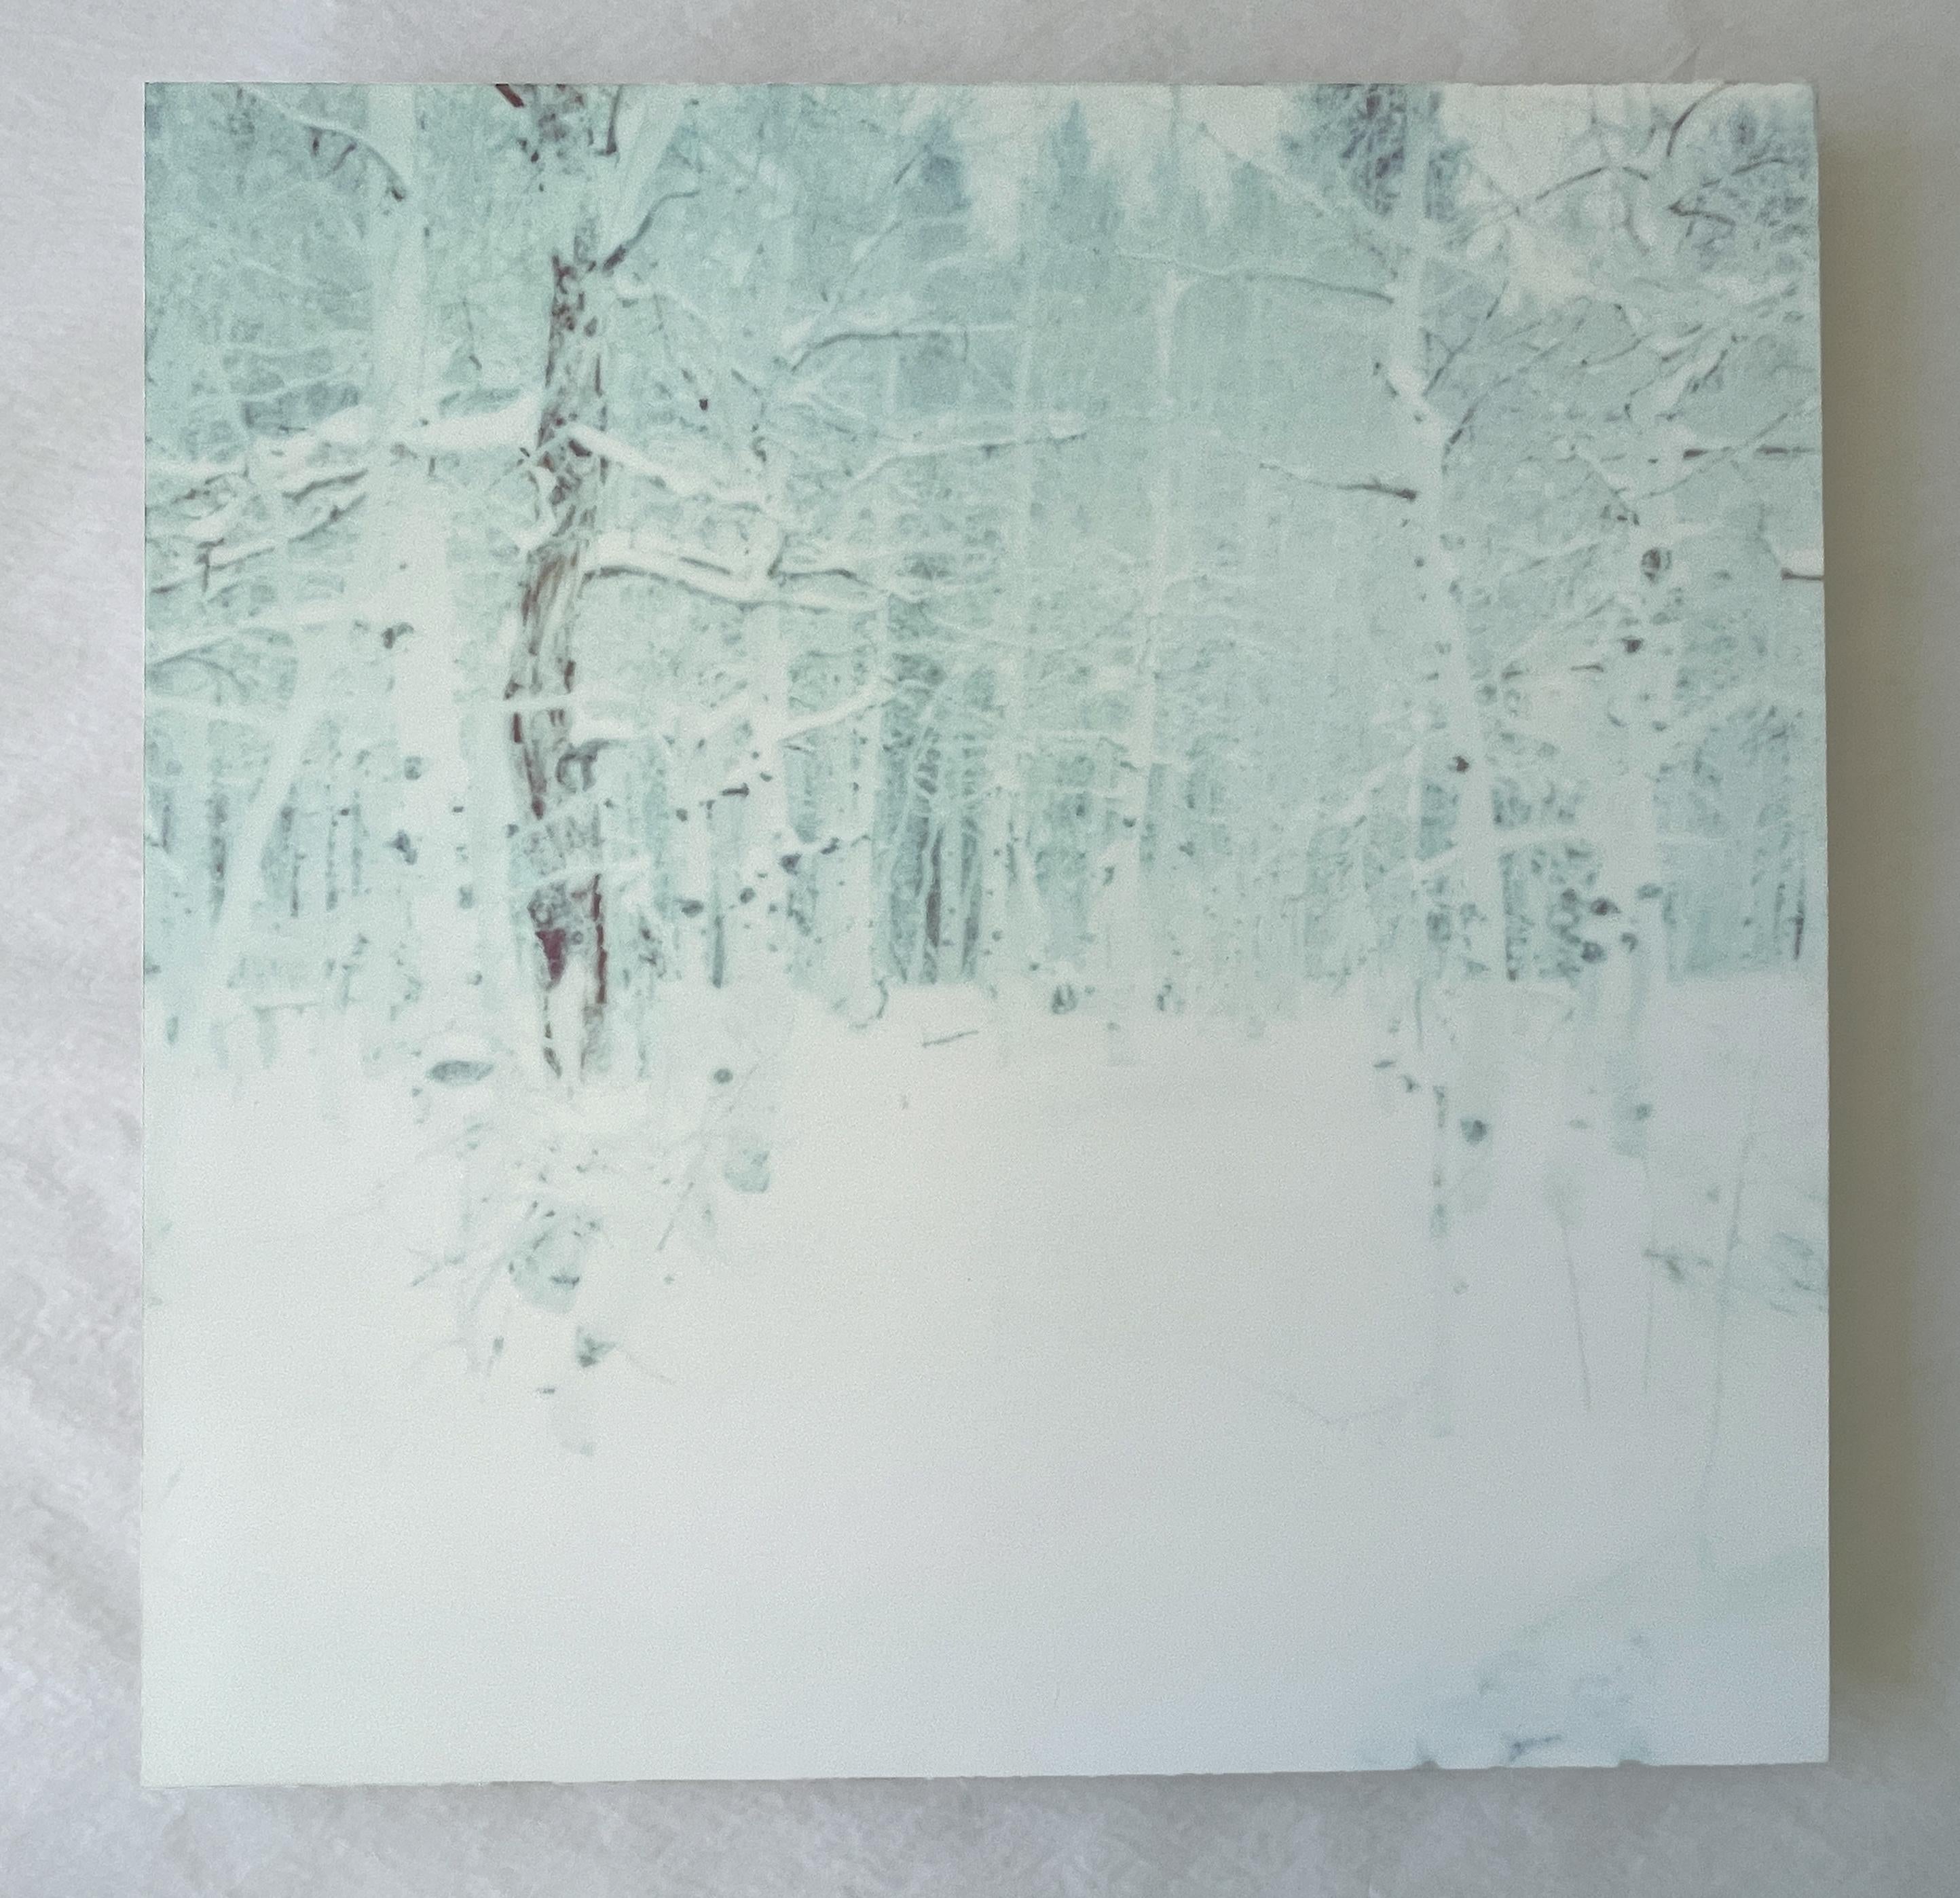 Stefanie Schneider Landscape Photograph – Winter (Wastelands) – Zeitgenössisch, Landschaft, Polaroid – analog, montiert